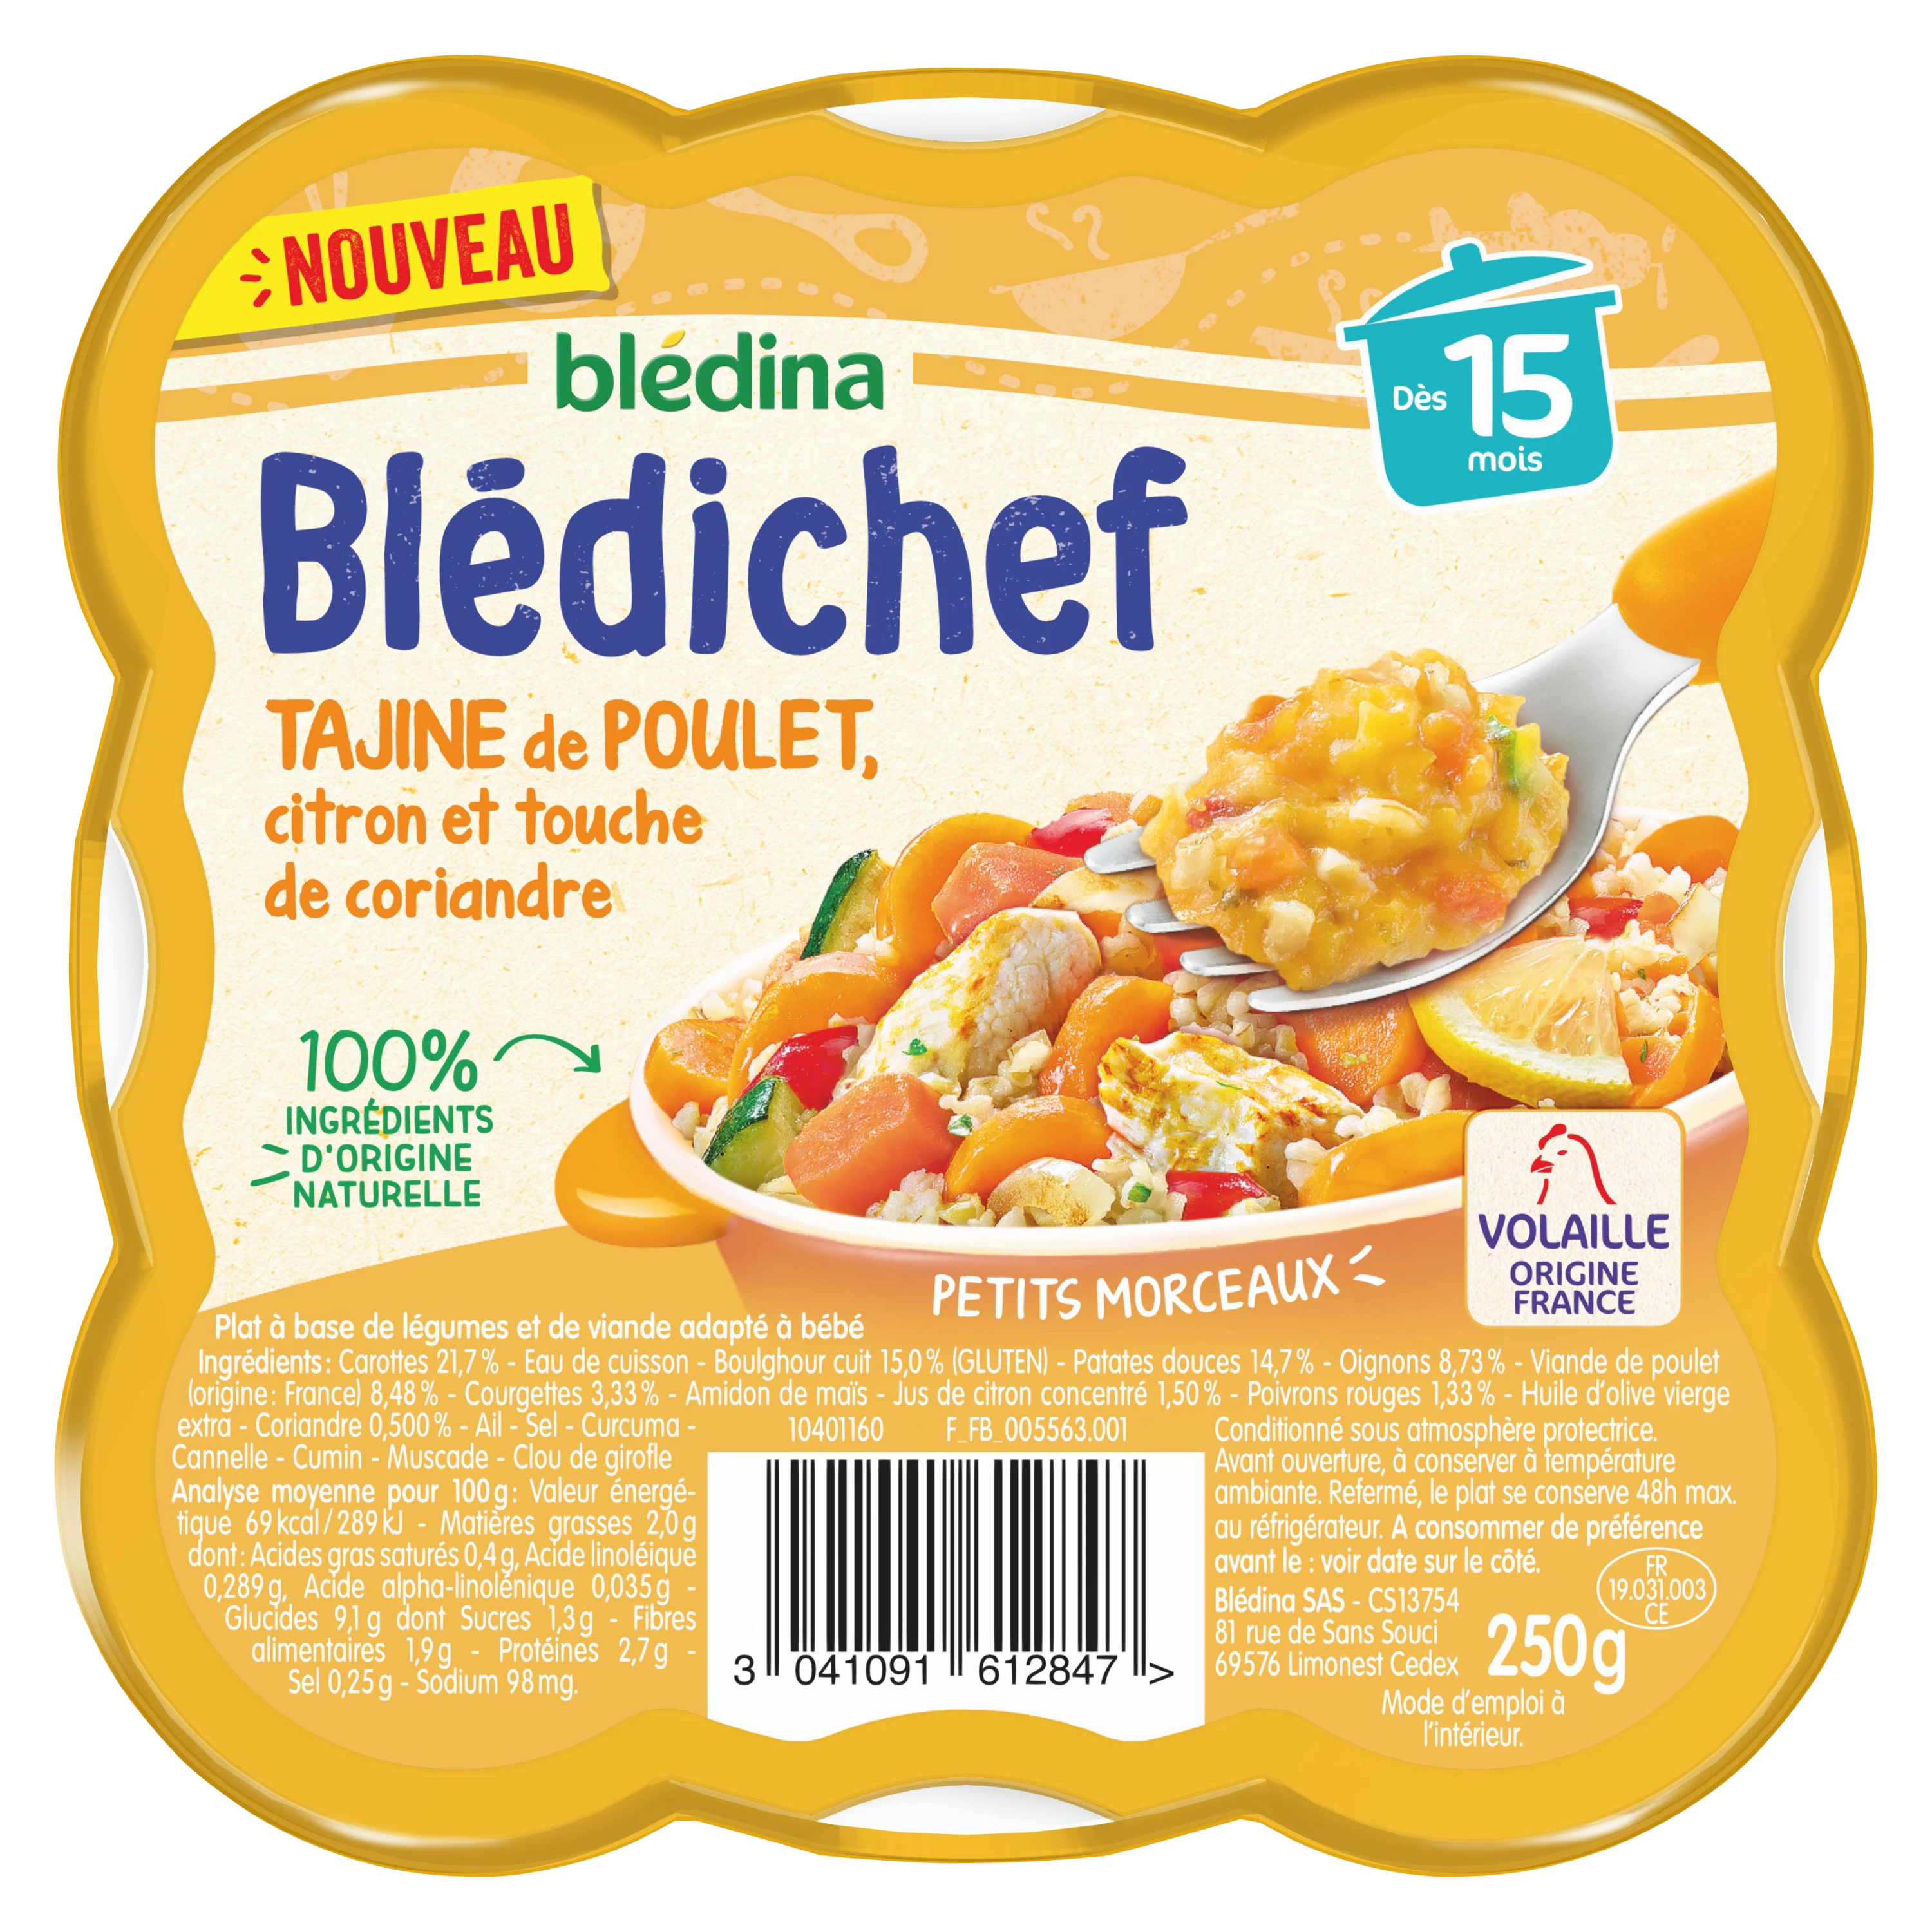 Món ăn cho bé Blédichef từ 15 tháng tuổi gà tagine chanh với một chút rau mùi 250g - BLEDINA